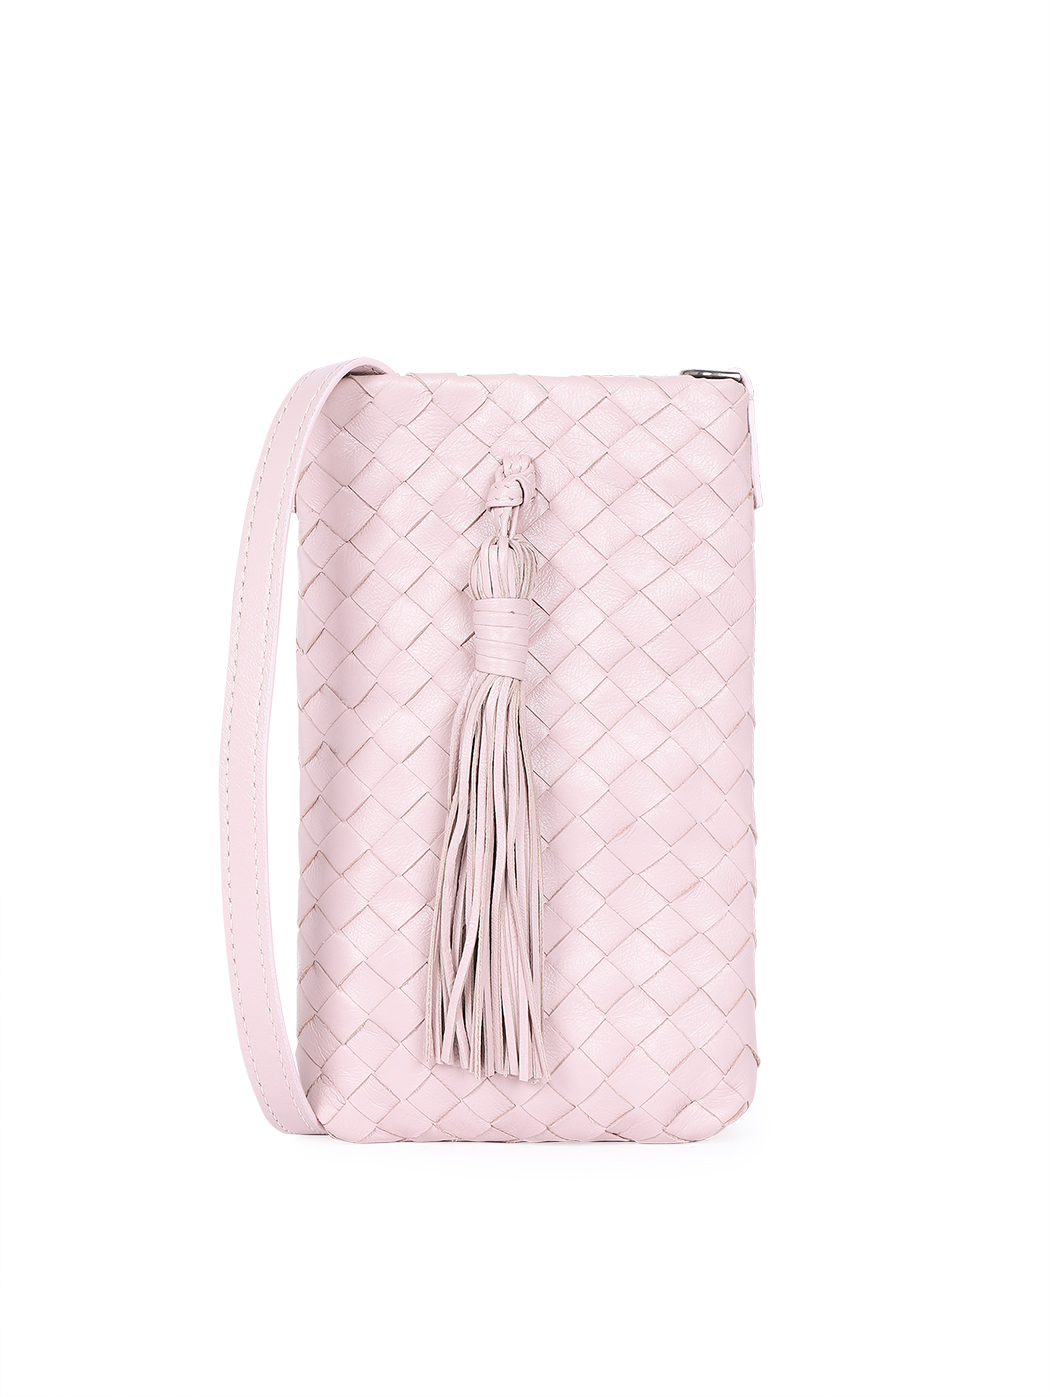 Плетеная сумочка кросс – боди для телефона коллекции Intrecci розового цвета